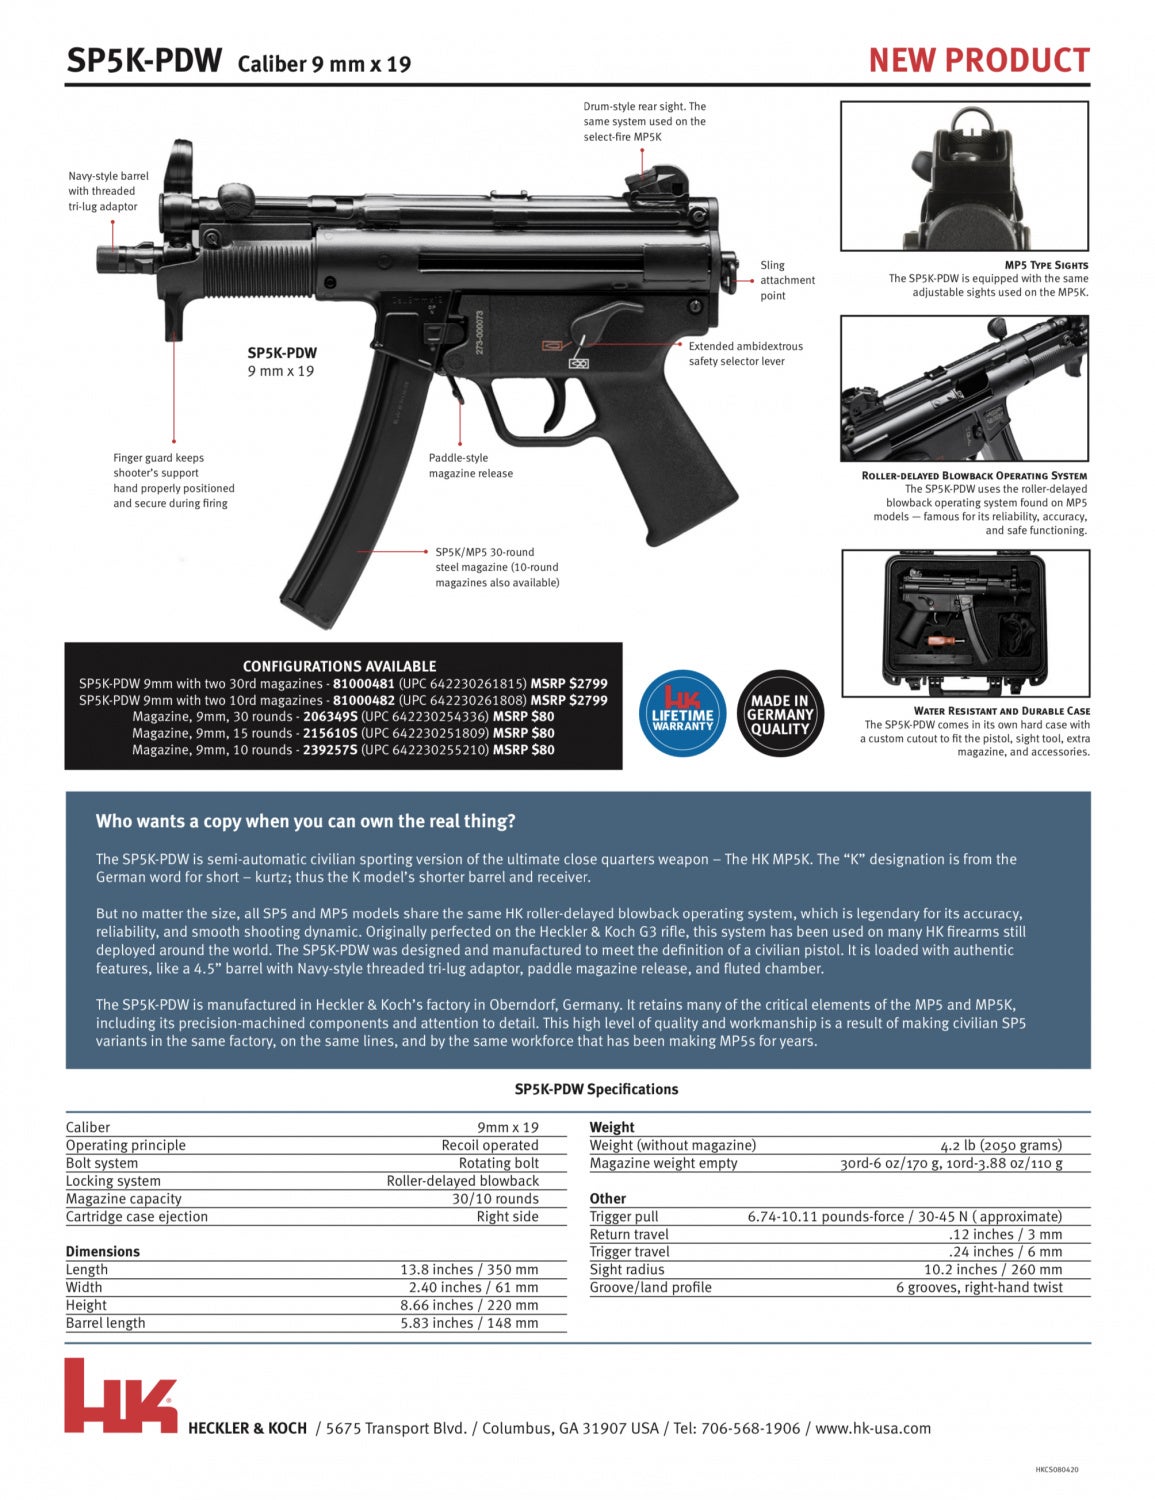 MP5K FOR US: H&K Drops The SP5K PDW - Gives Hope To 2020